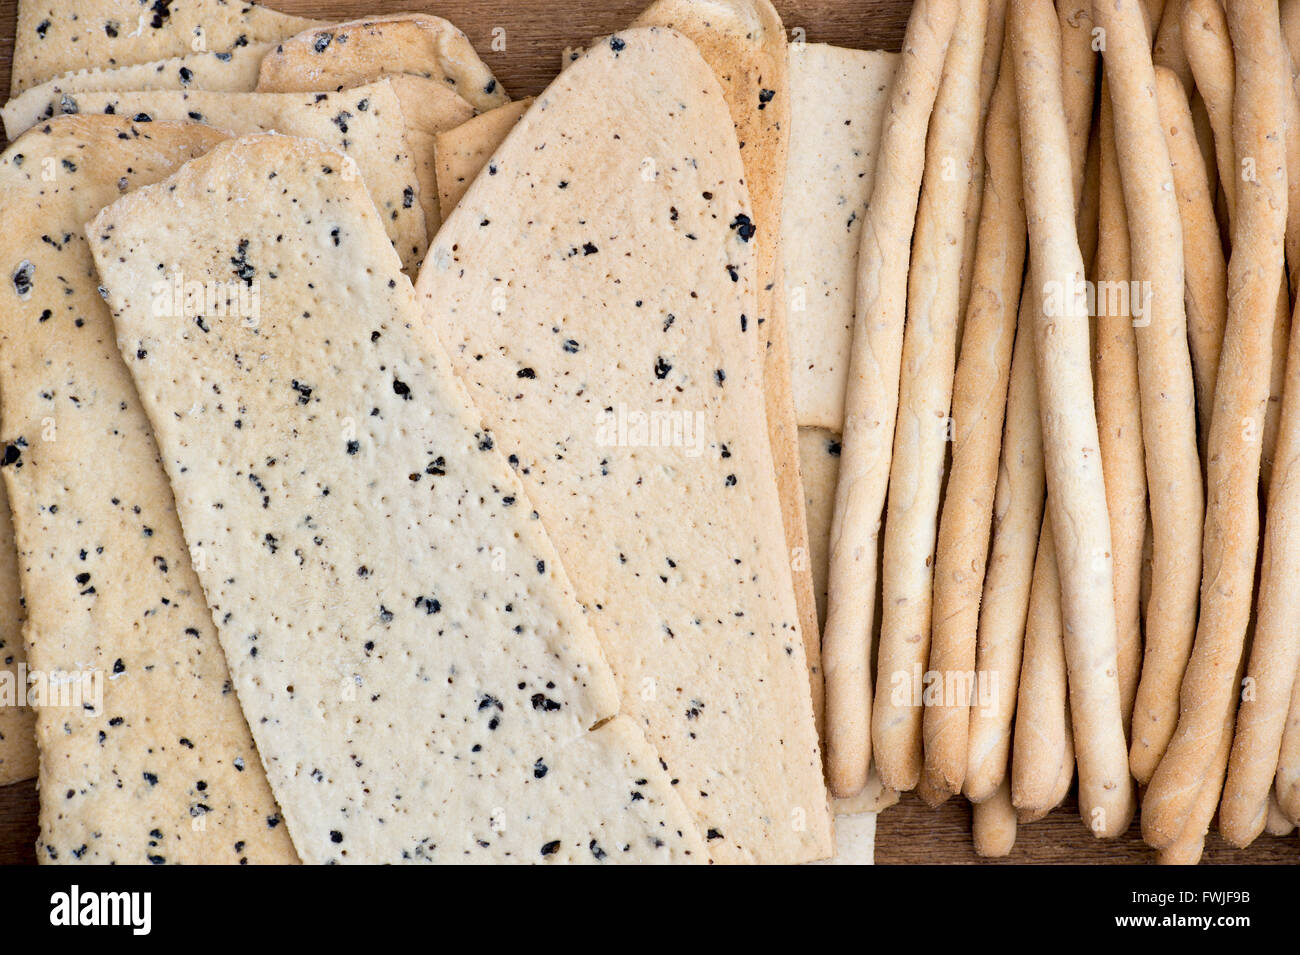 Italian Crispy flatbread / Croccante and Sesame rubato breadsticks Stock Photo